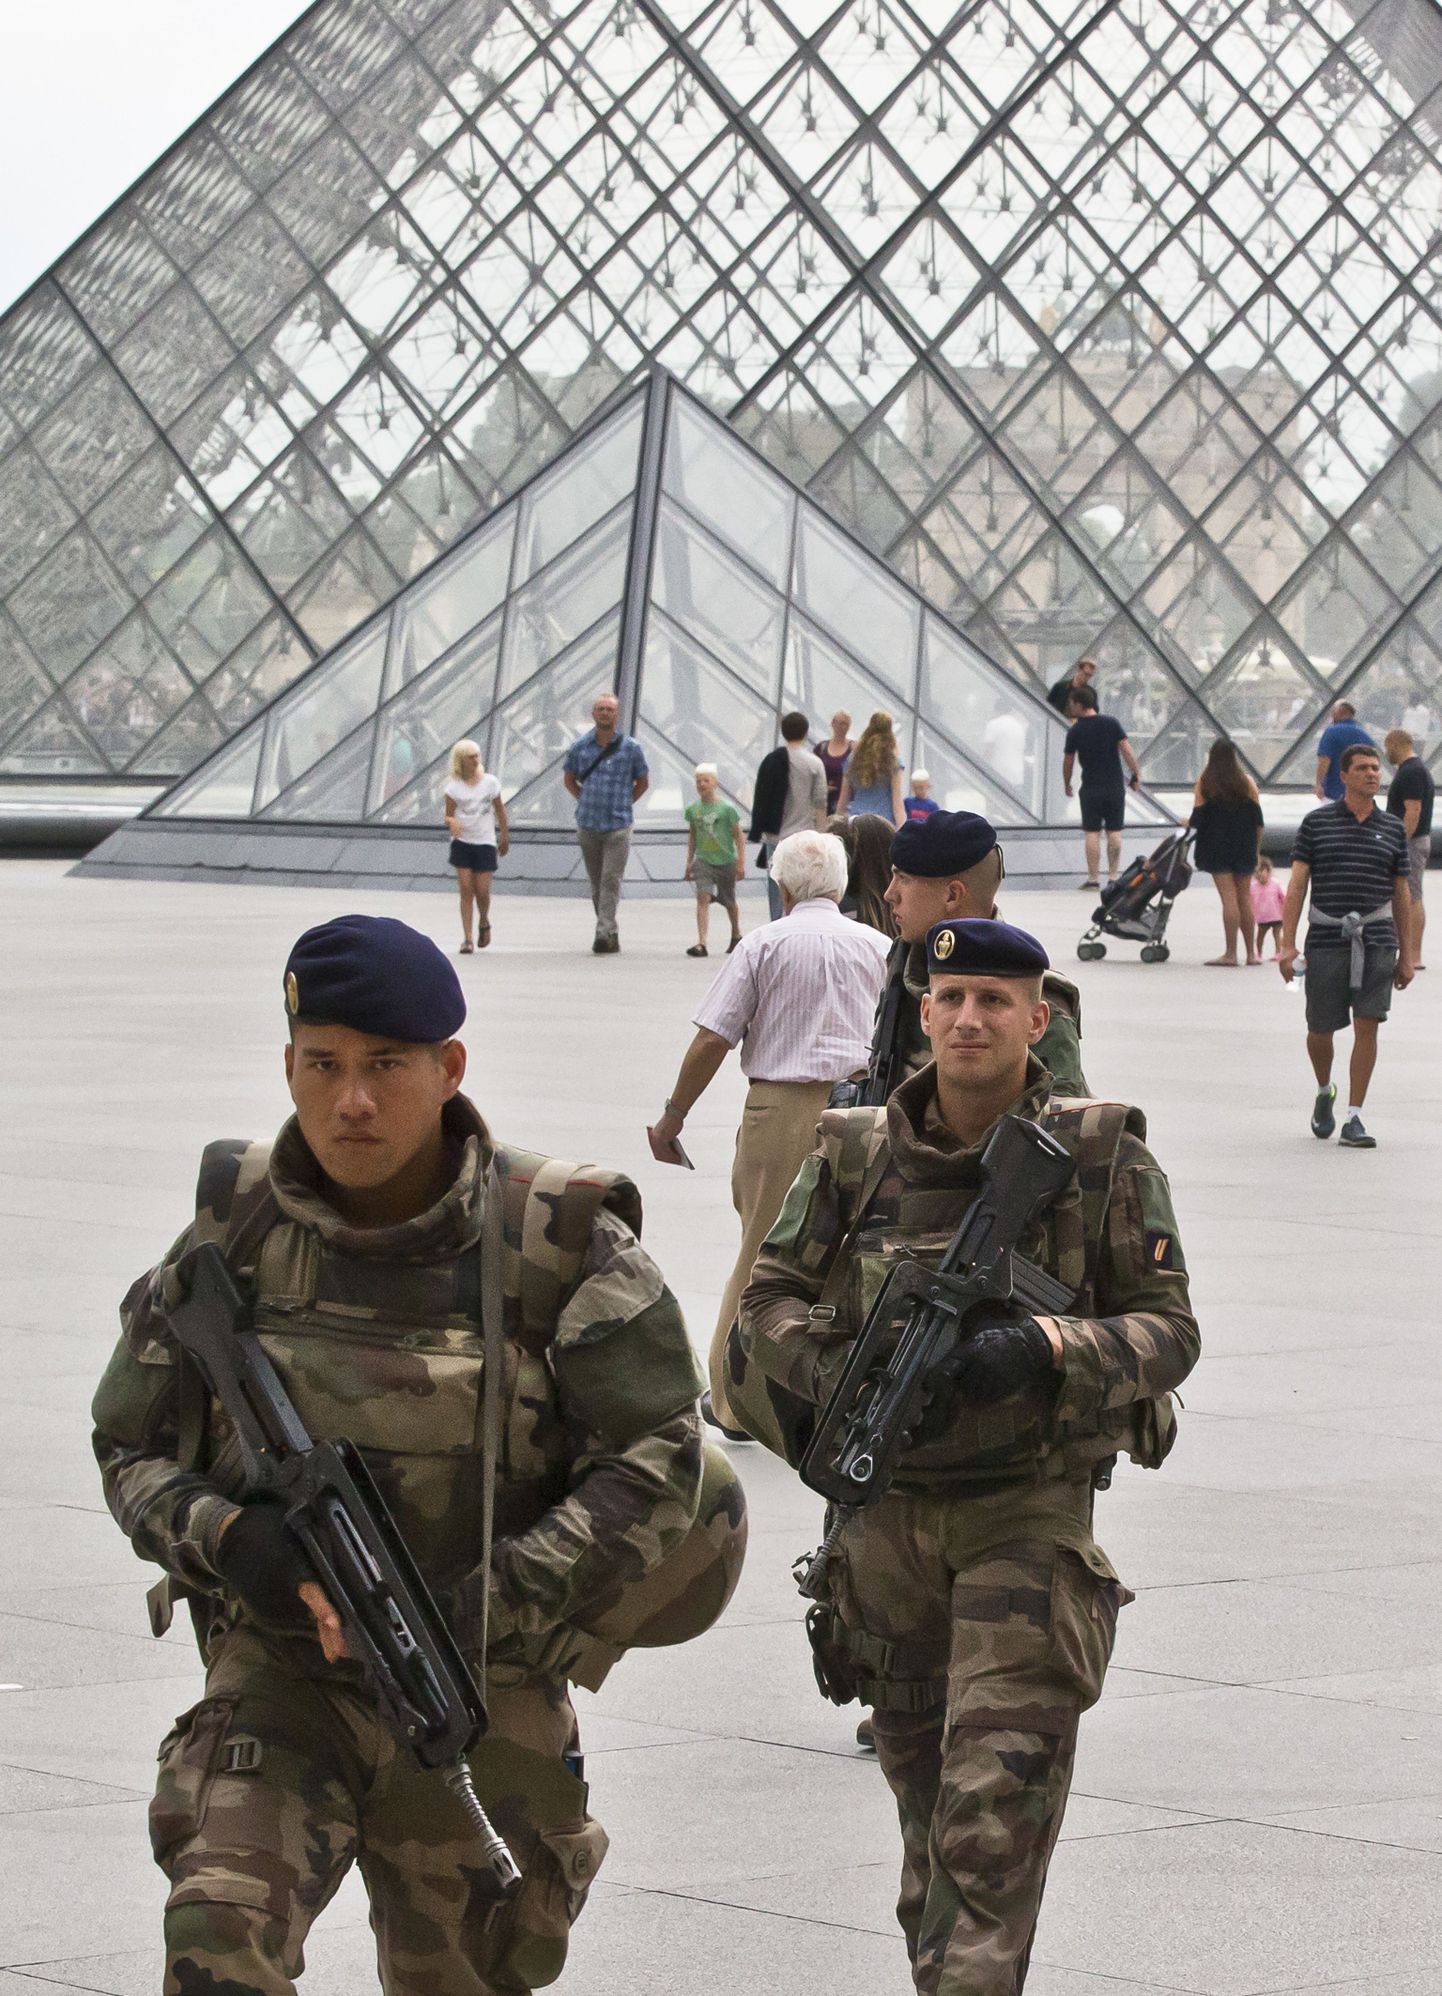 Prantsuse sõdurid patrullivad Louvre'i juures Pariisis. Terrorirünnakute oht on Prantsusmaal endiselt reaalne